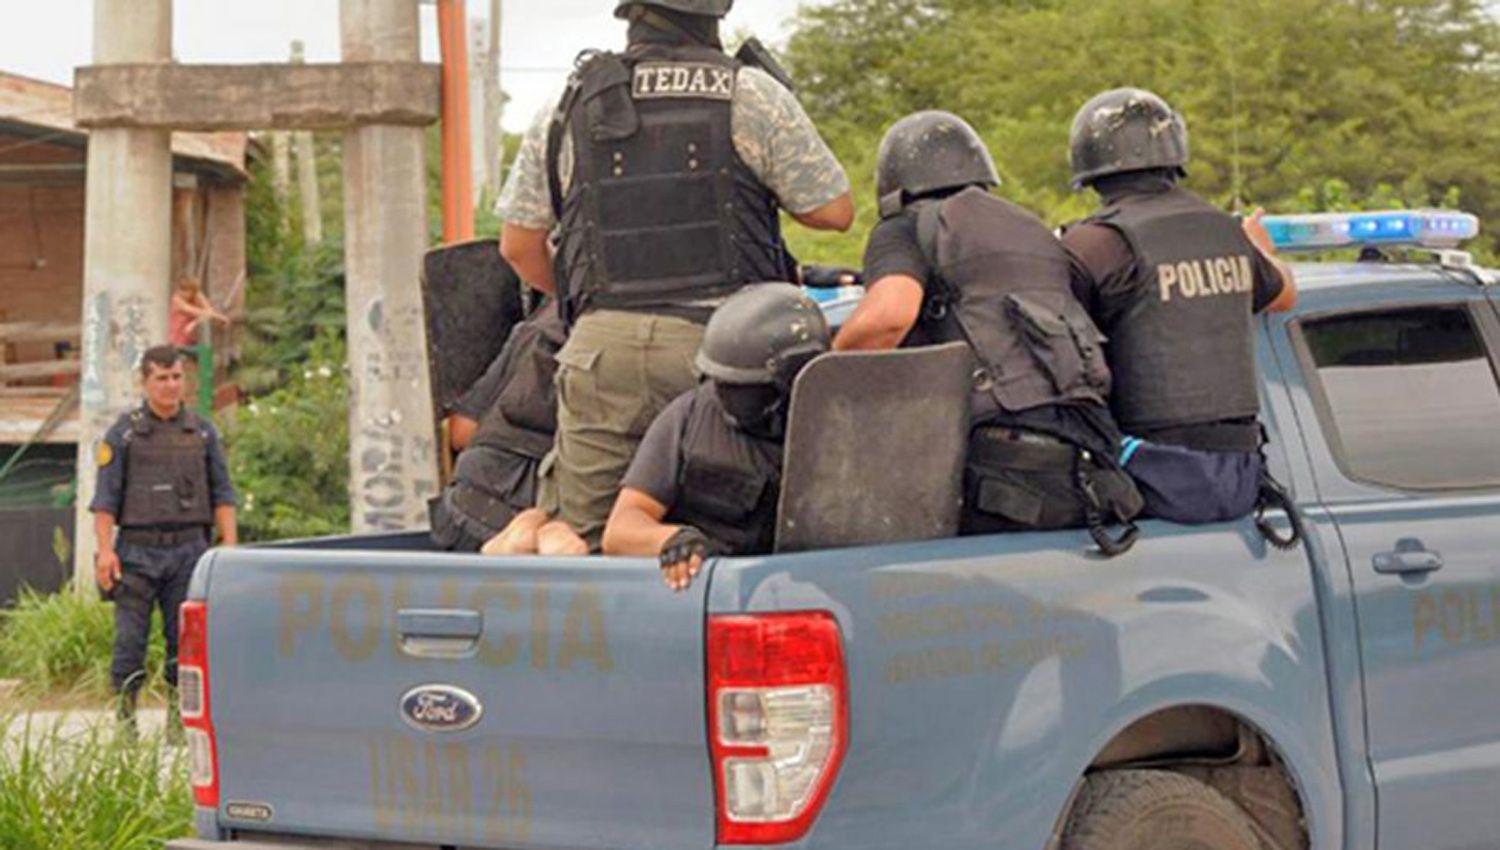 Piden prisioacuten preventiva para el ldquoColombianordquo por patear y morder a policiacuteas en Pinto